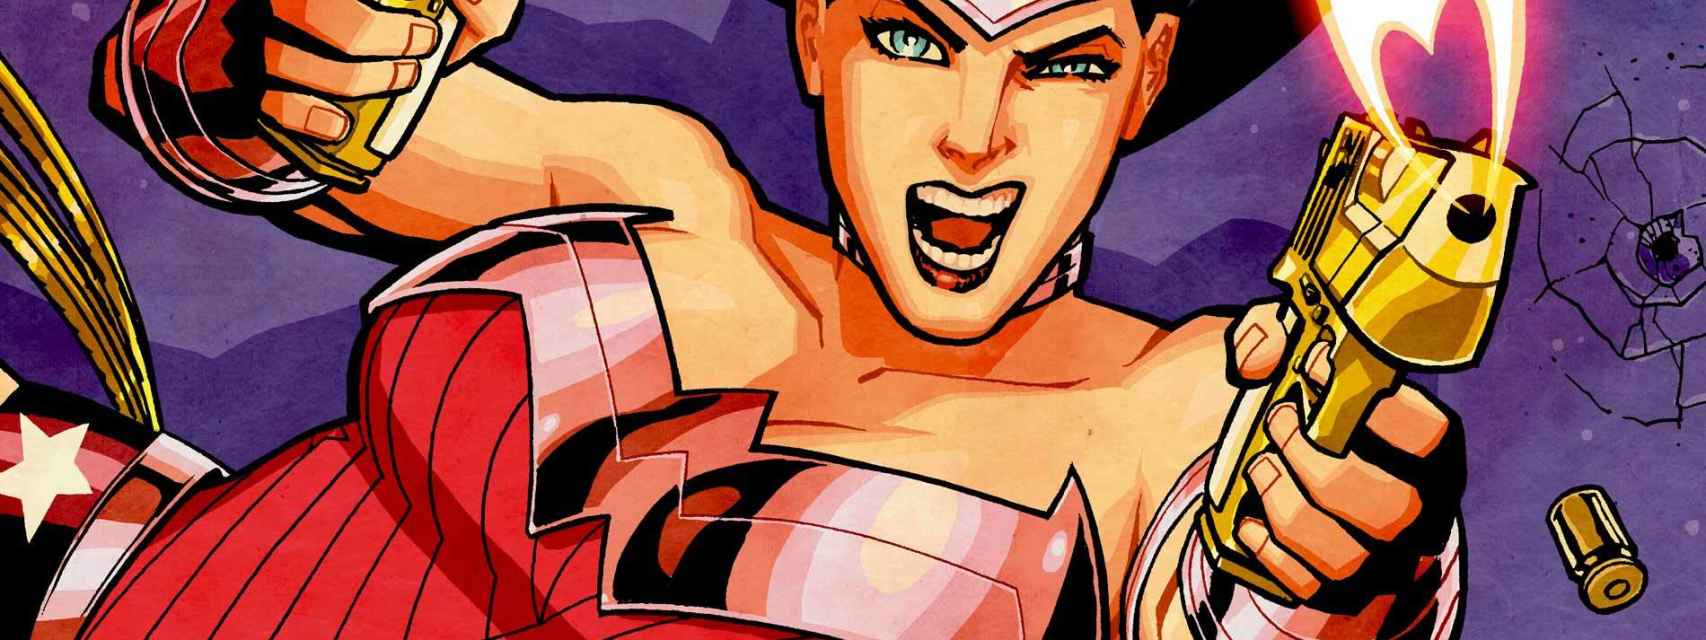 Una imagen de Wonder Woman en su lucha contra los males que amenazan la estabilidad social.